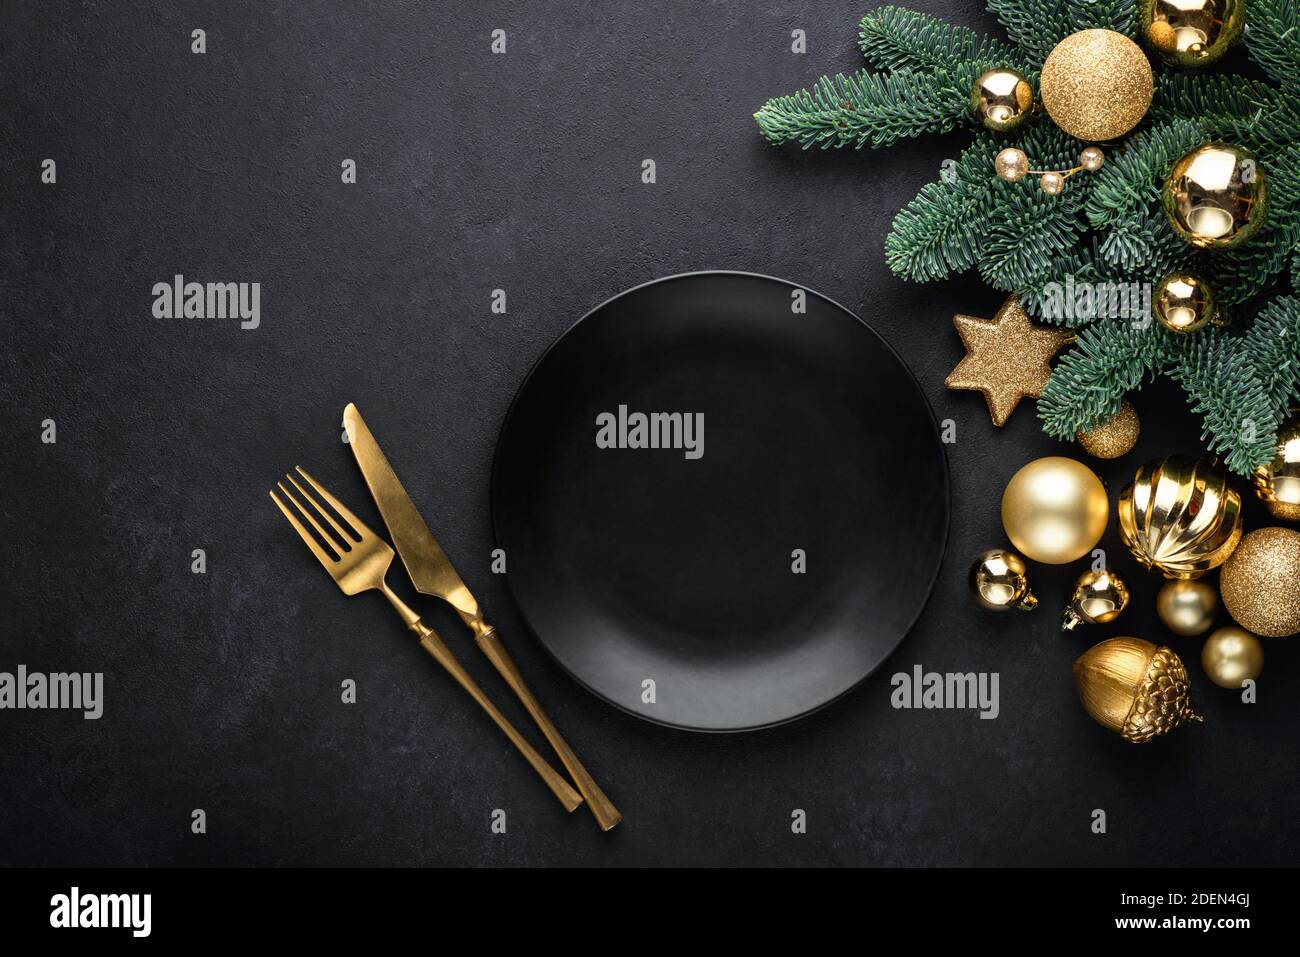 Weihnachten flach lag Hintergrund mit leeren schwarzen Teller, goldenes  Besteck, weihnachtsbaum und Spielzeug. Draufsicht, Kopierbereich. Modisch  modisch schwarz Thema CH Stockfotografie - Alamy